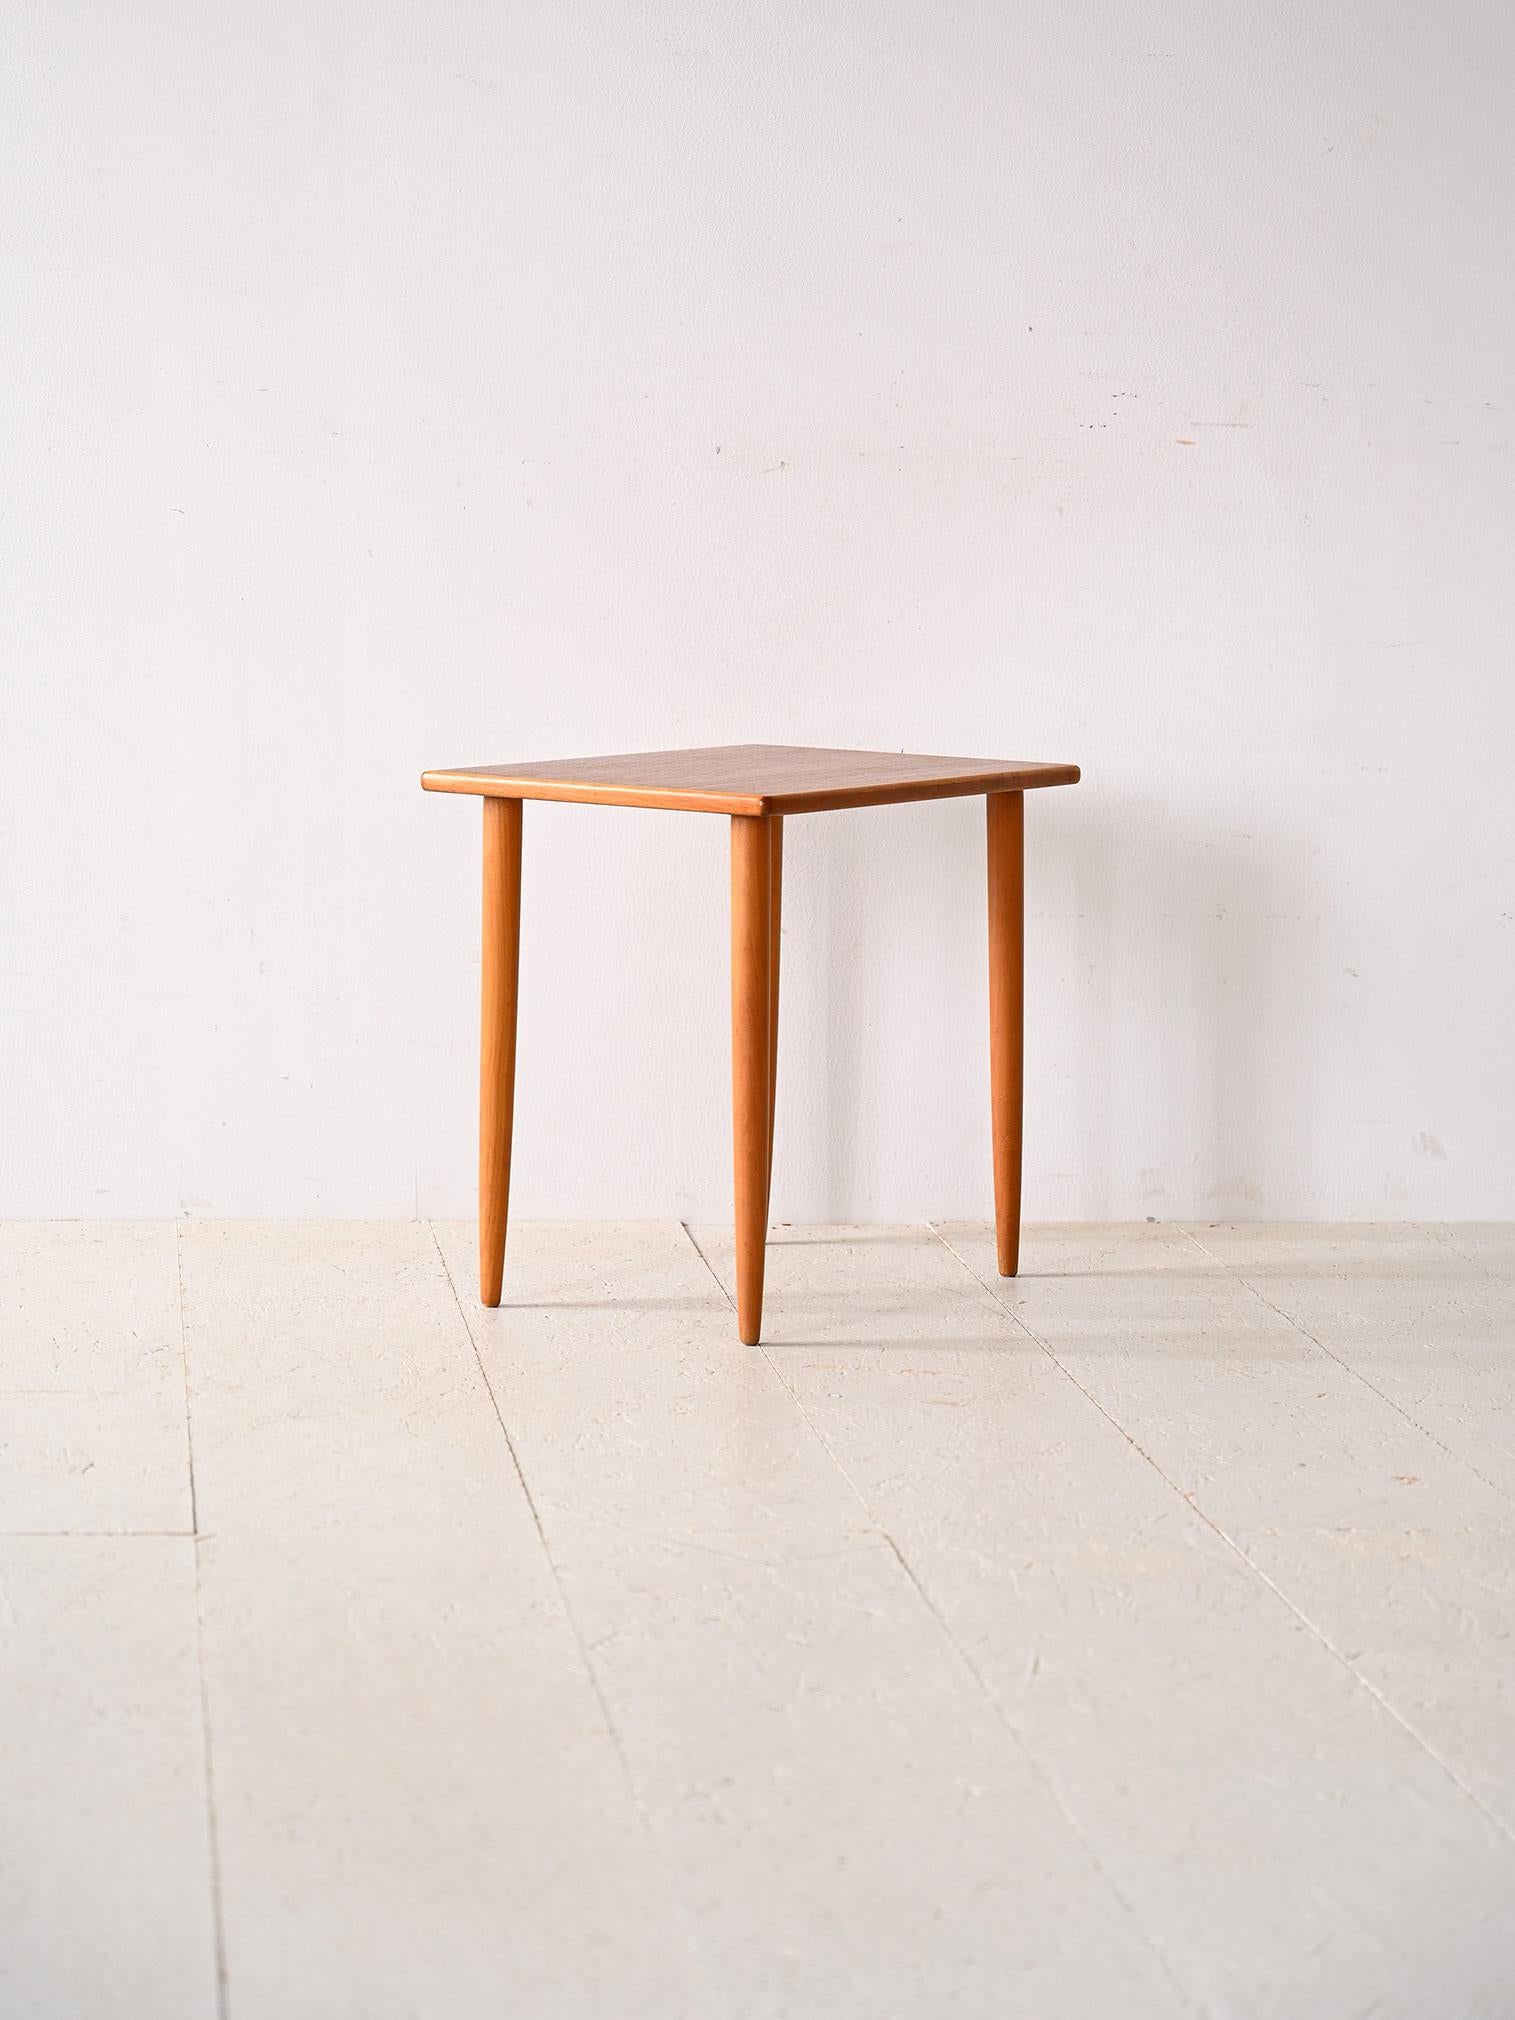 Couchtisch aus nordischer Produktion aus den 1960er Jahren.

Ein schlichtes und elegantes Möbelstück, das gut in verschiedene Kontexte und Stile passt. Bestehend aus einer rechteckigen Teakholzplatte und langen, konischen Beinen, die die Figur